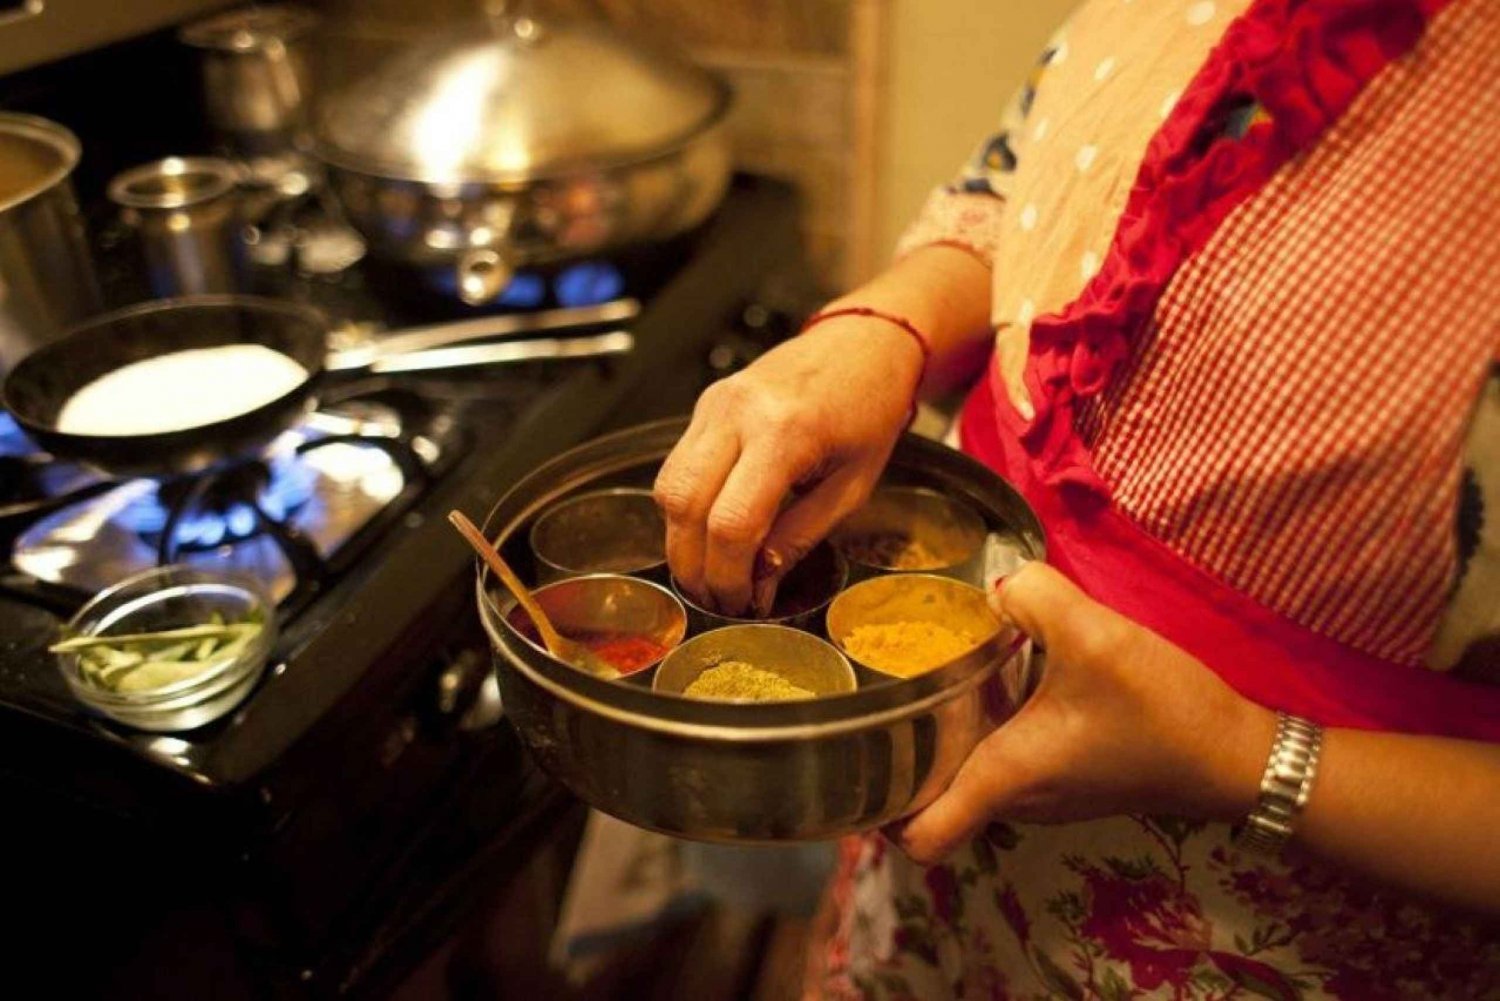 Jaipur: Kochkurs im Haus der Gastfamilie für 3 Stunden